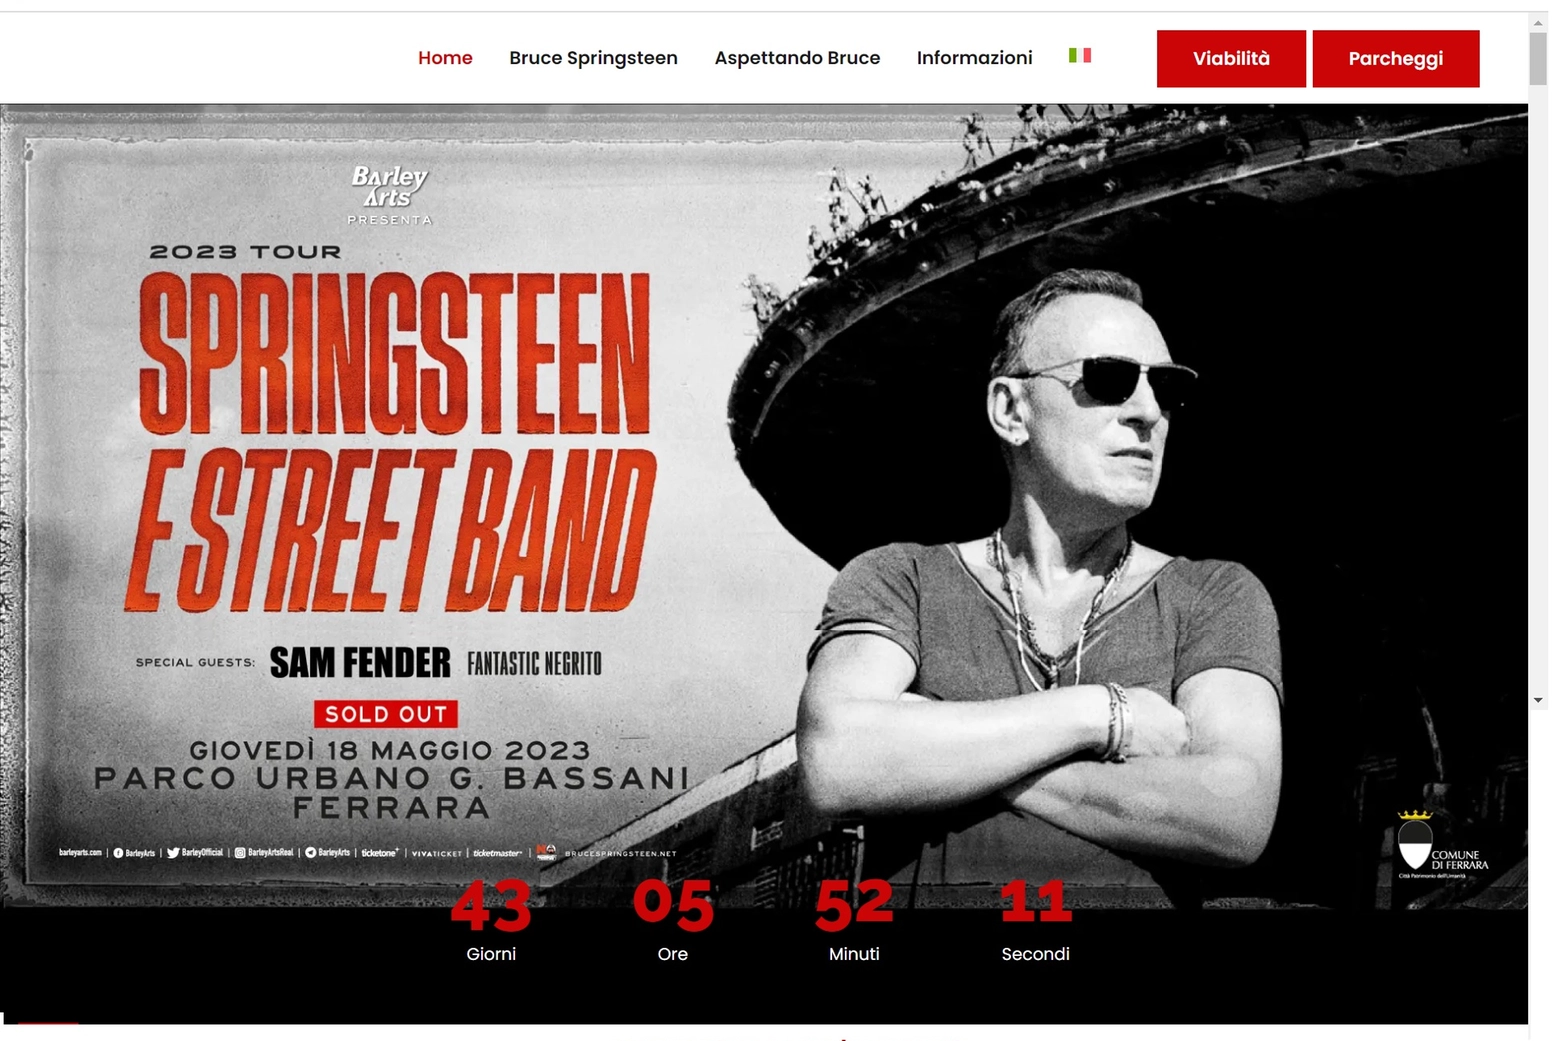 Il sito internet dedicato al concerto a Ferrara di Bruce Springsteen